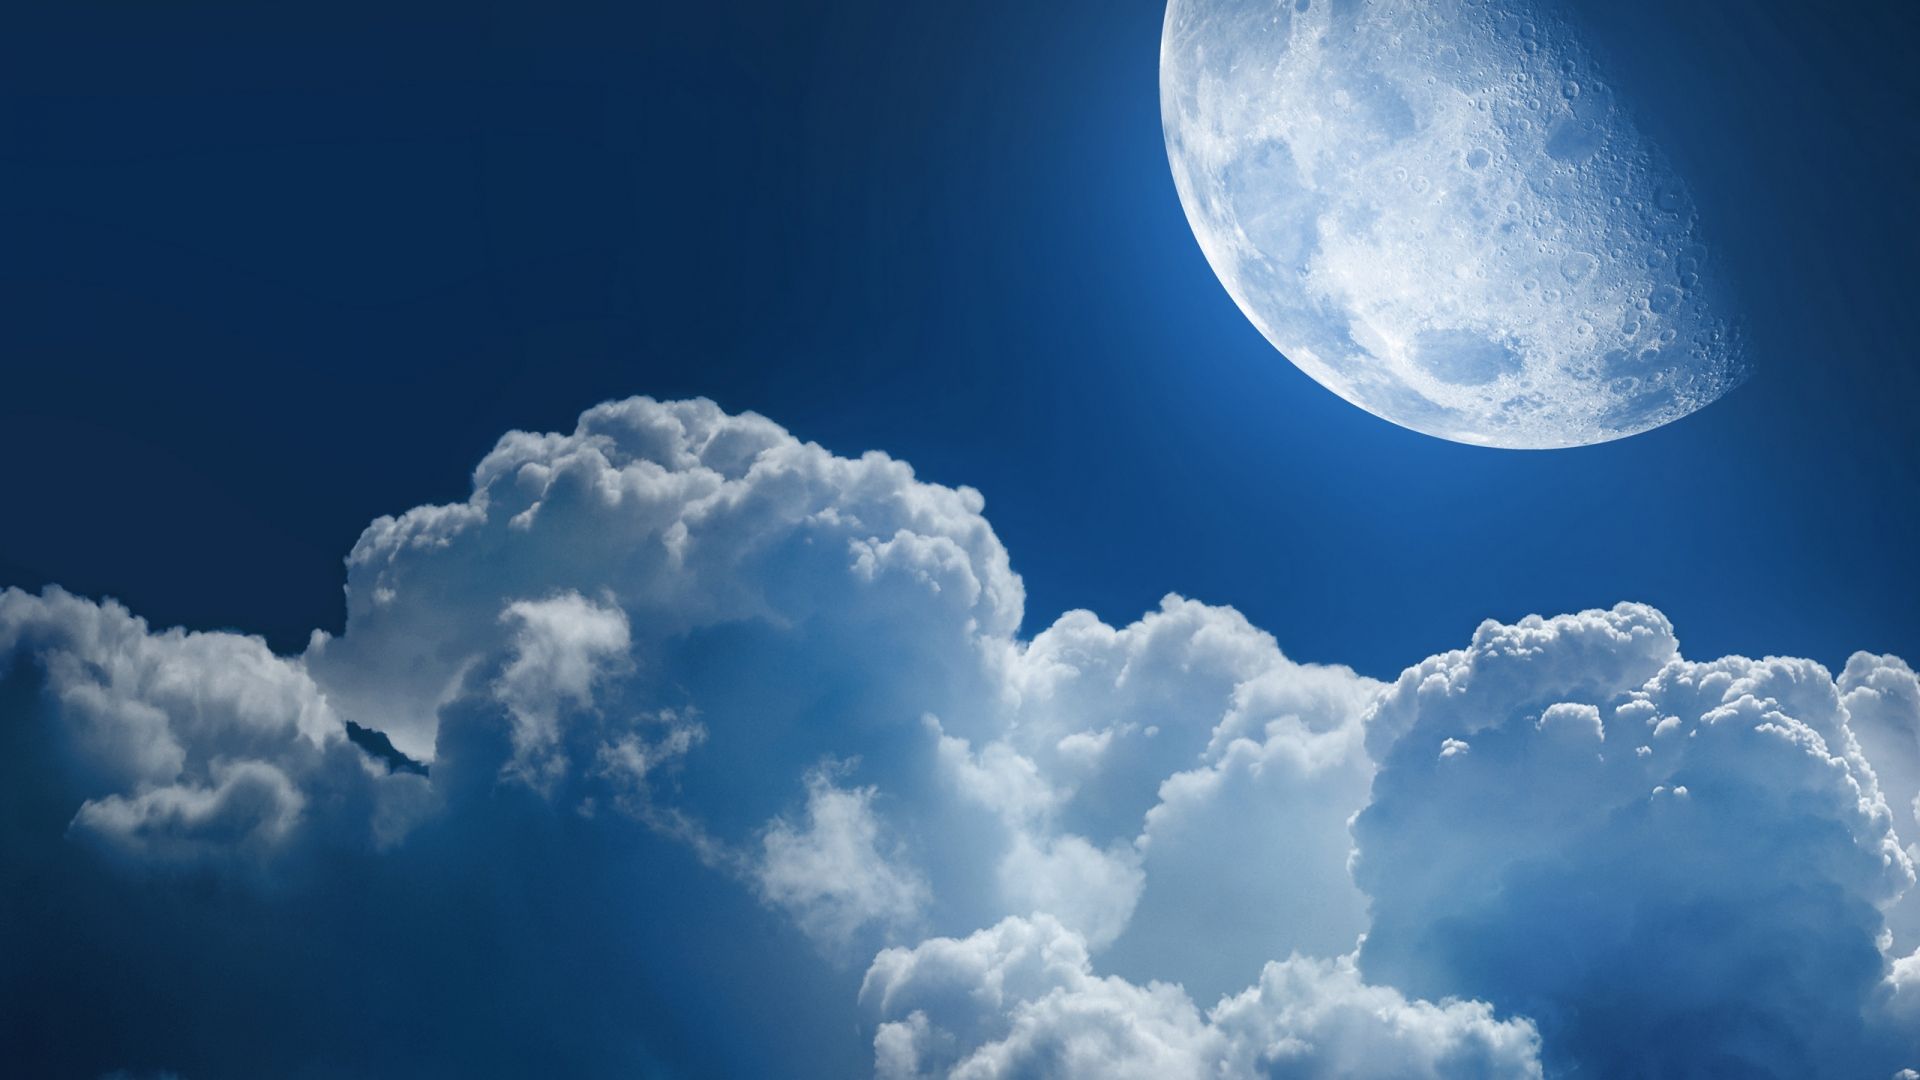 Cập nhật trend mới: Xem hình ảnh mặt trăng vào ngày sinh của bạn -  Fptshop.com.vn